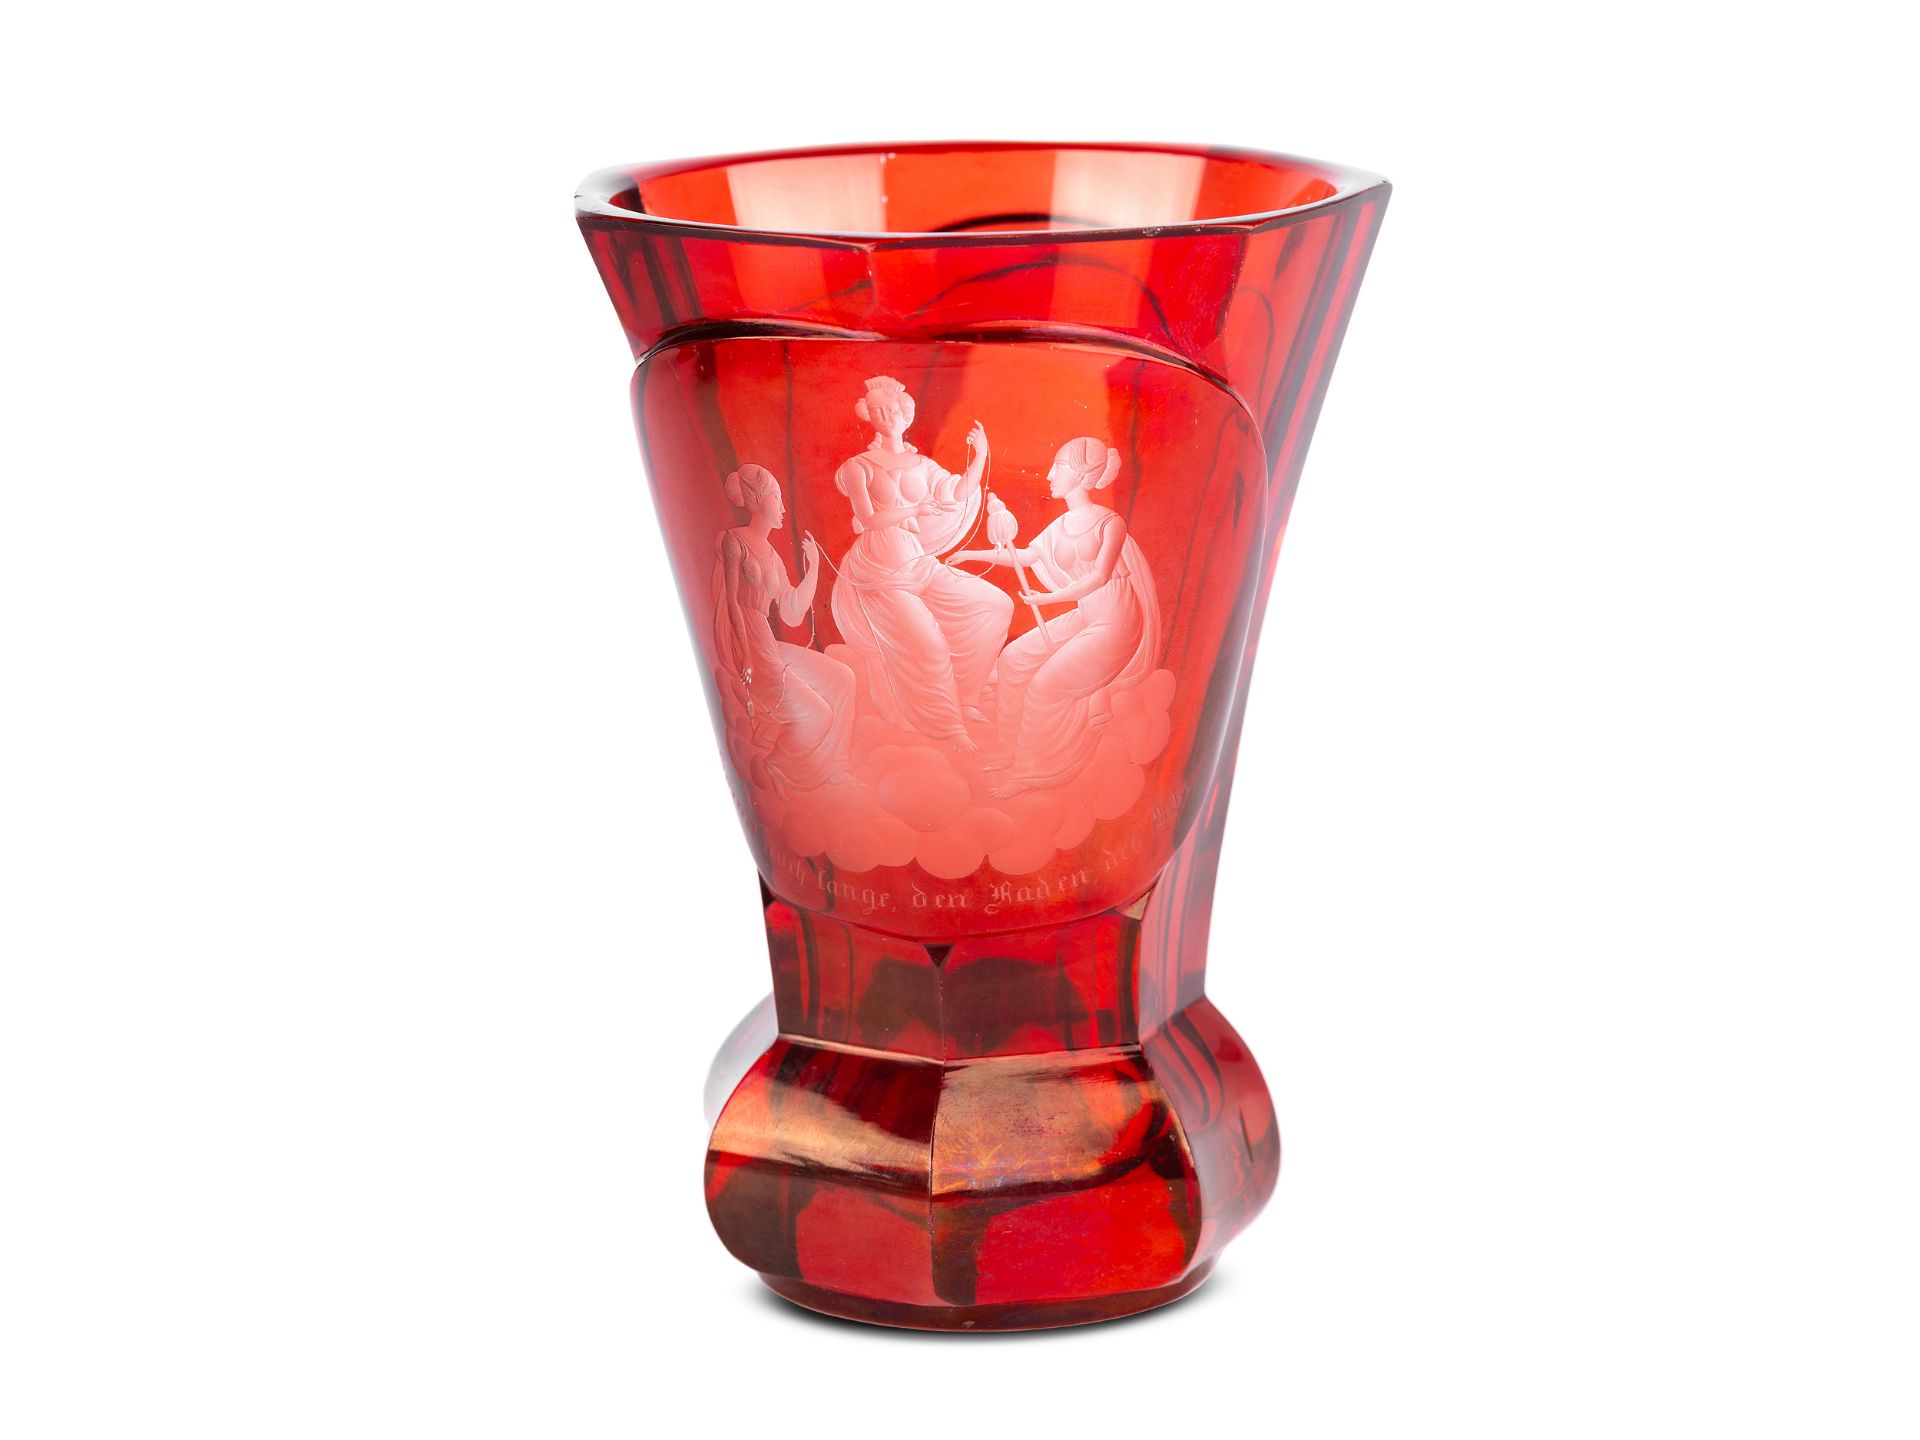 Biedermeier Glass with Goddesses of Fate (Moiren/Parzen), Red glass